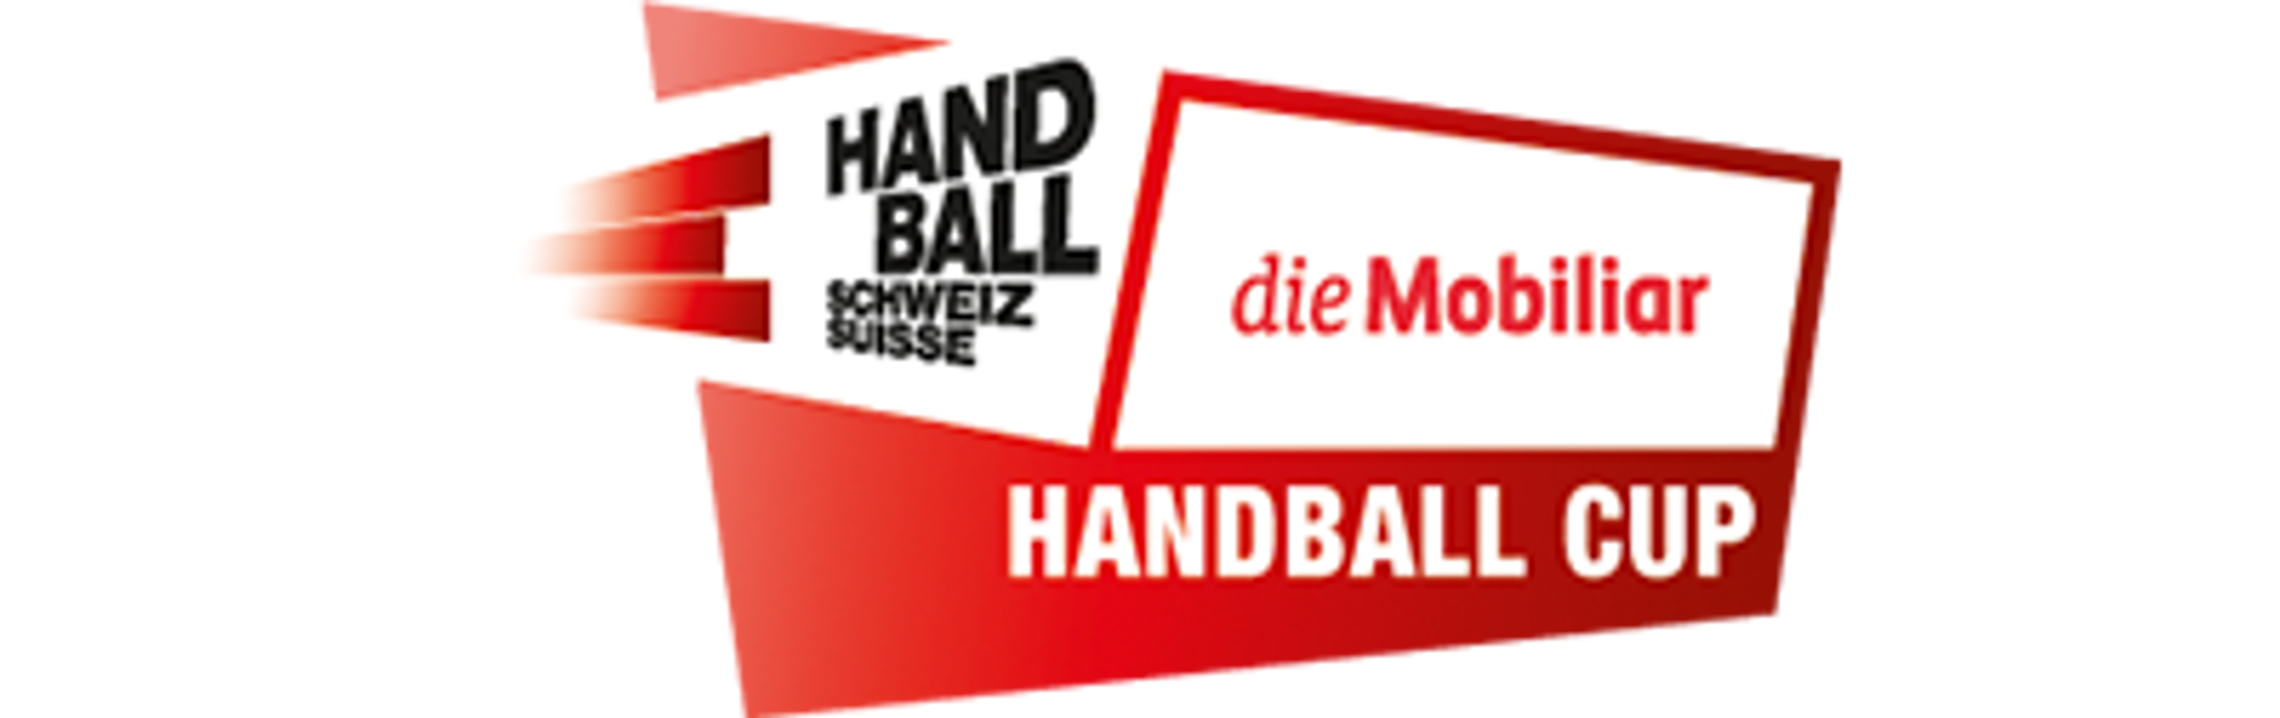 die Mobiliar Handball Cup